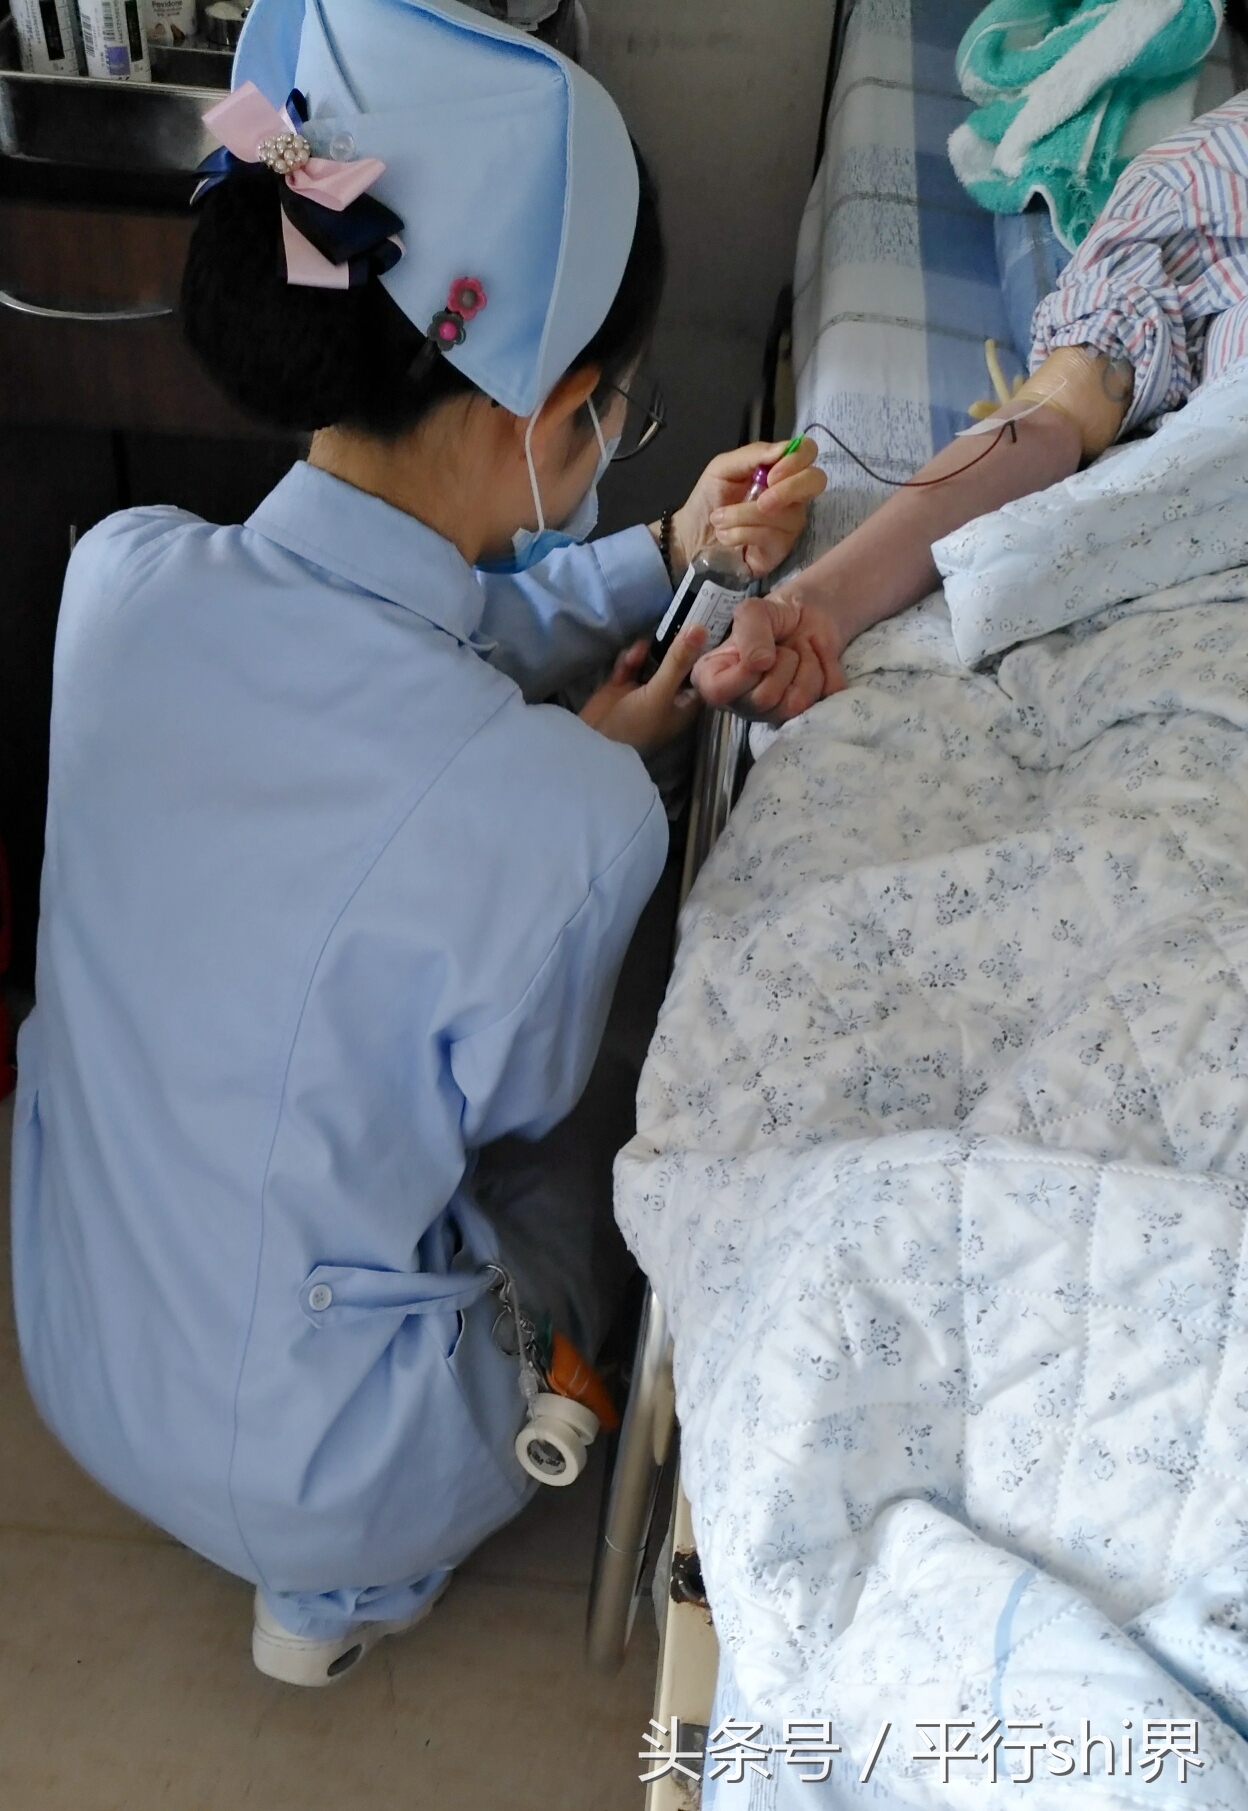 上海一护士跪式采血半小时 获网友点赞称她"最美白衣天使"